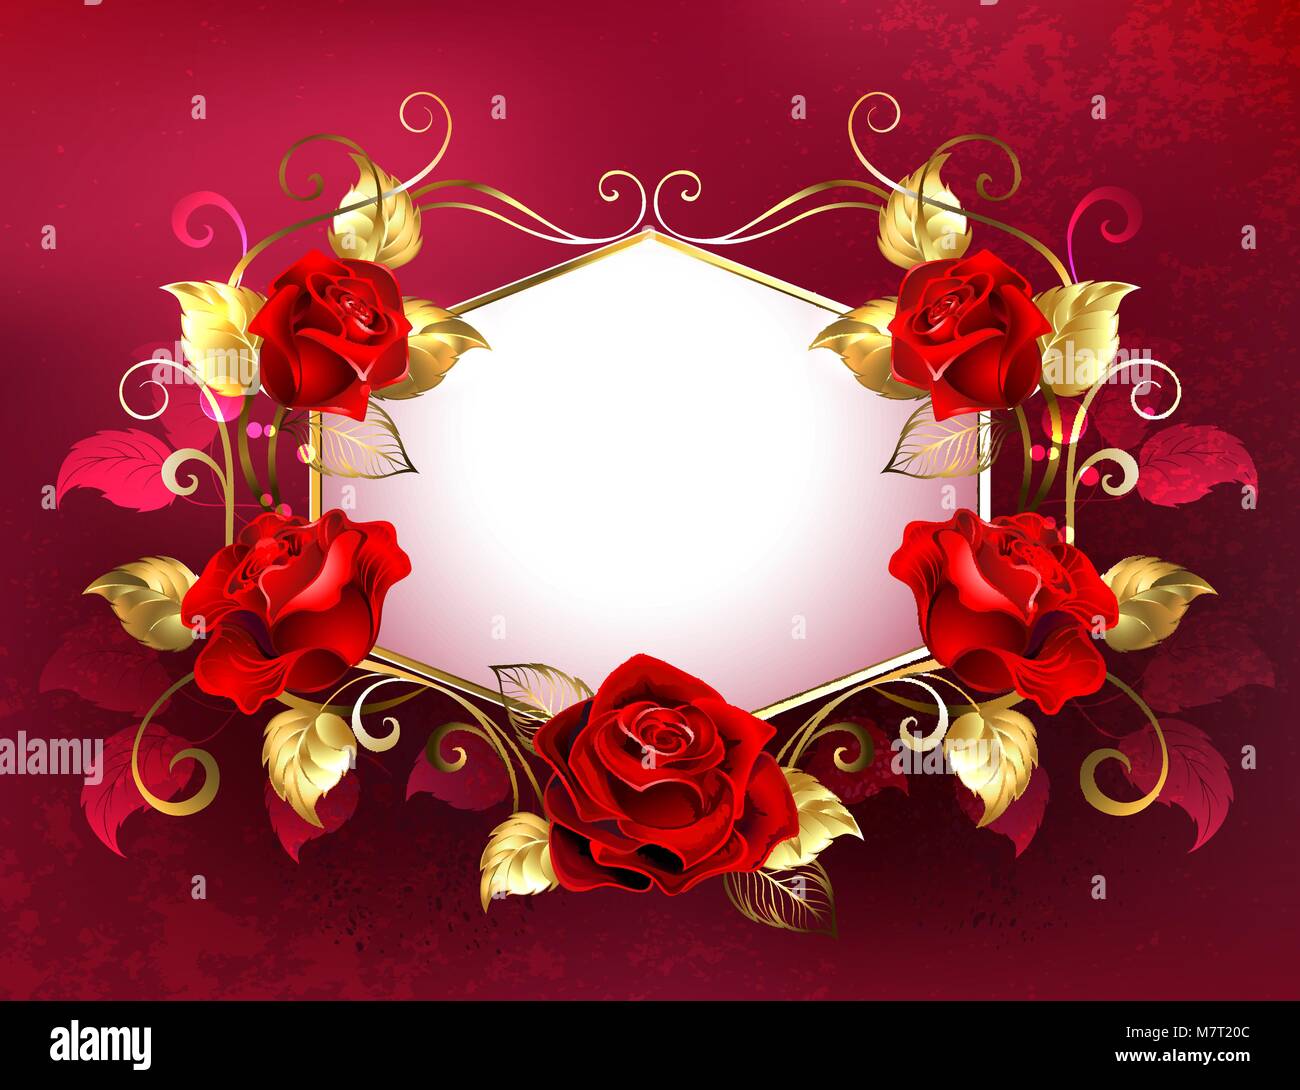 Weißes Schild mit roten Rosen dekoriert, mit goldenen Blätter und Stängel auf rotem Hintergrund. Design mit Rosen. Rote Rosen. Stock Vektor